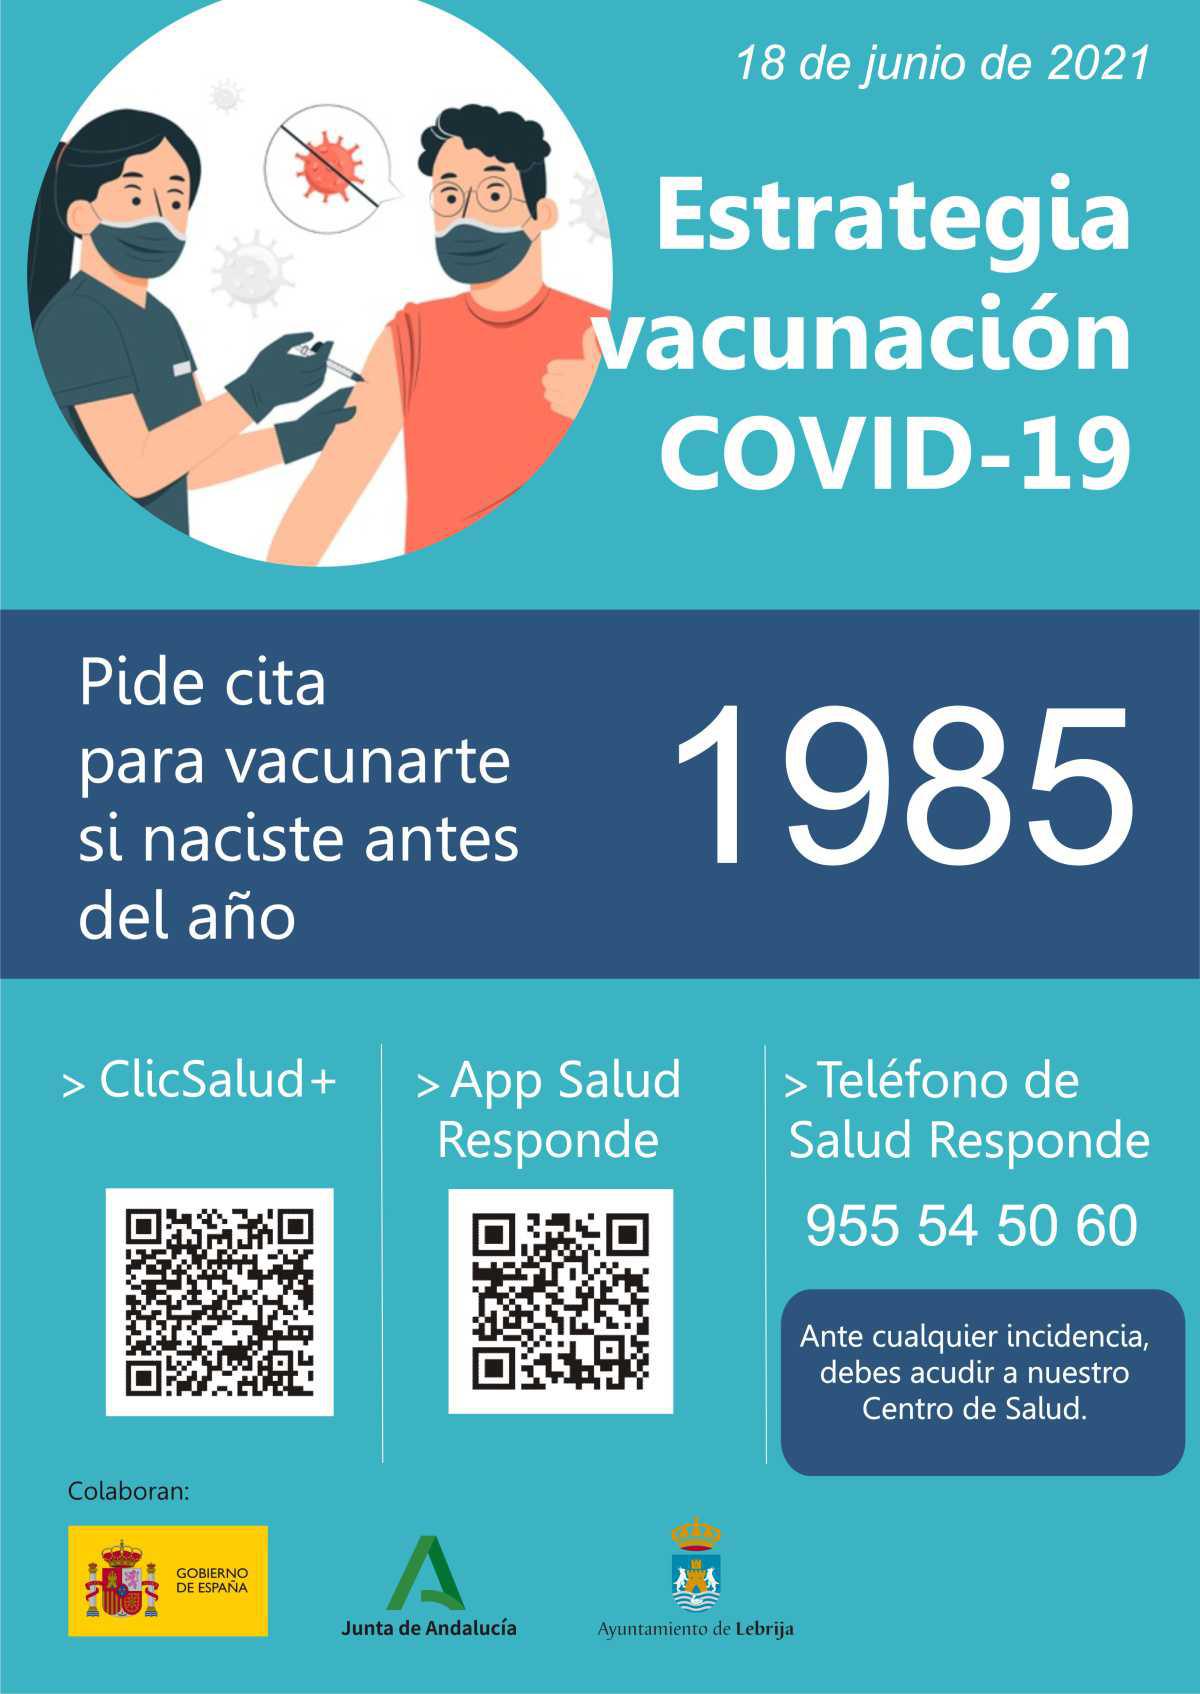 Las personas nacidas en 1985 ya pueden pedir cita para vacunarse contra la Covid-19 